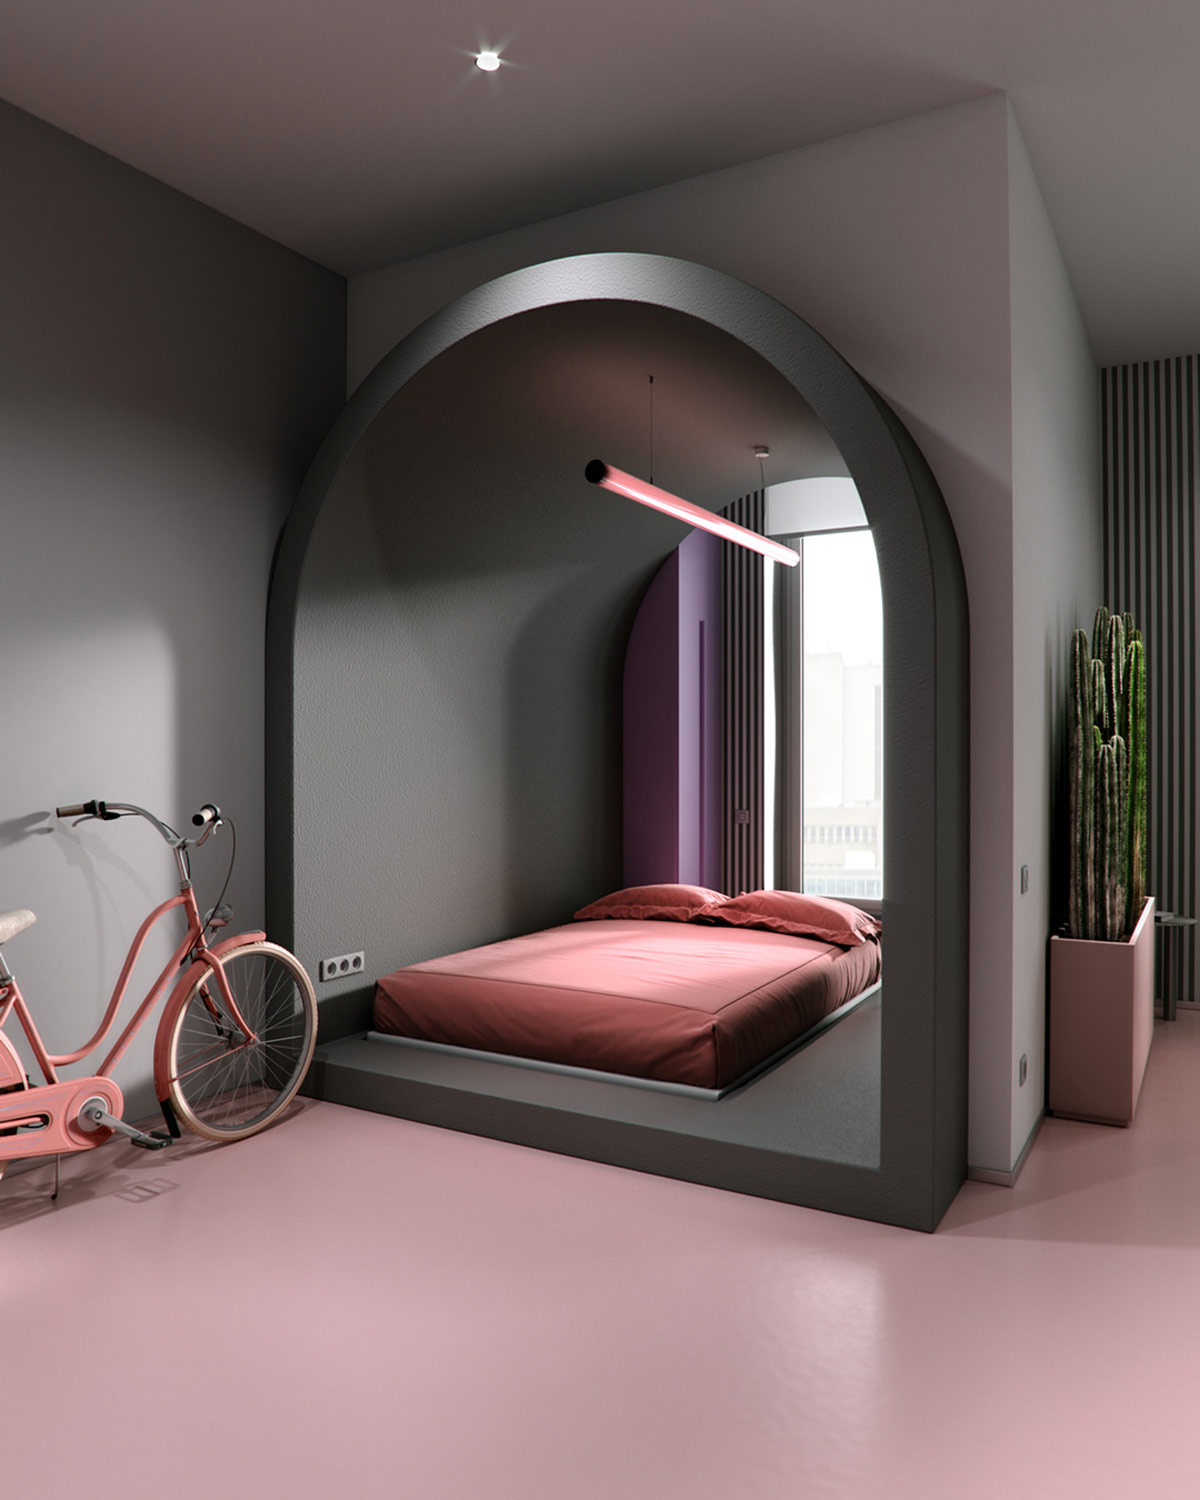 hình ảnh phòng ngủ nằm trong hốc vòm độc đáo với giường màu hồng, tường xám, cửa sổ kính